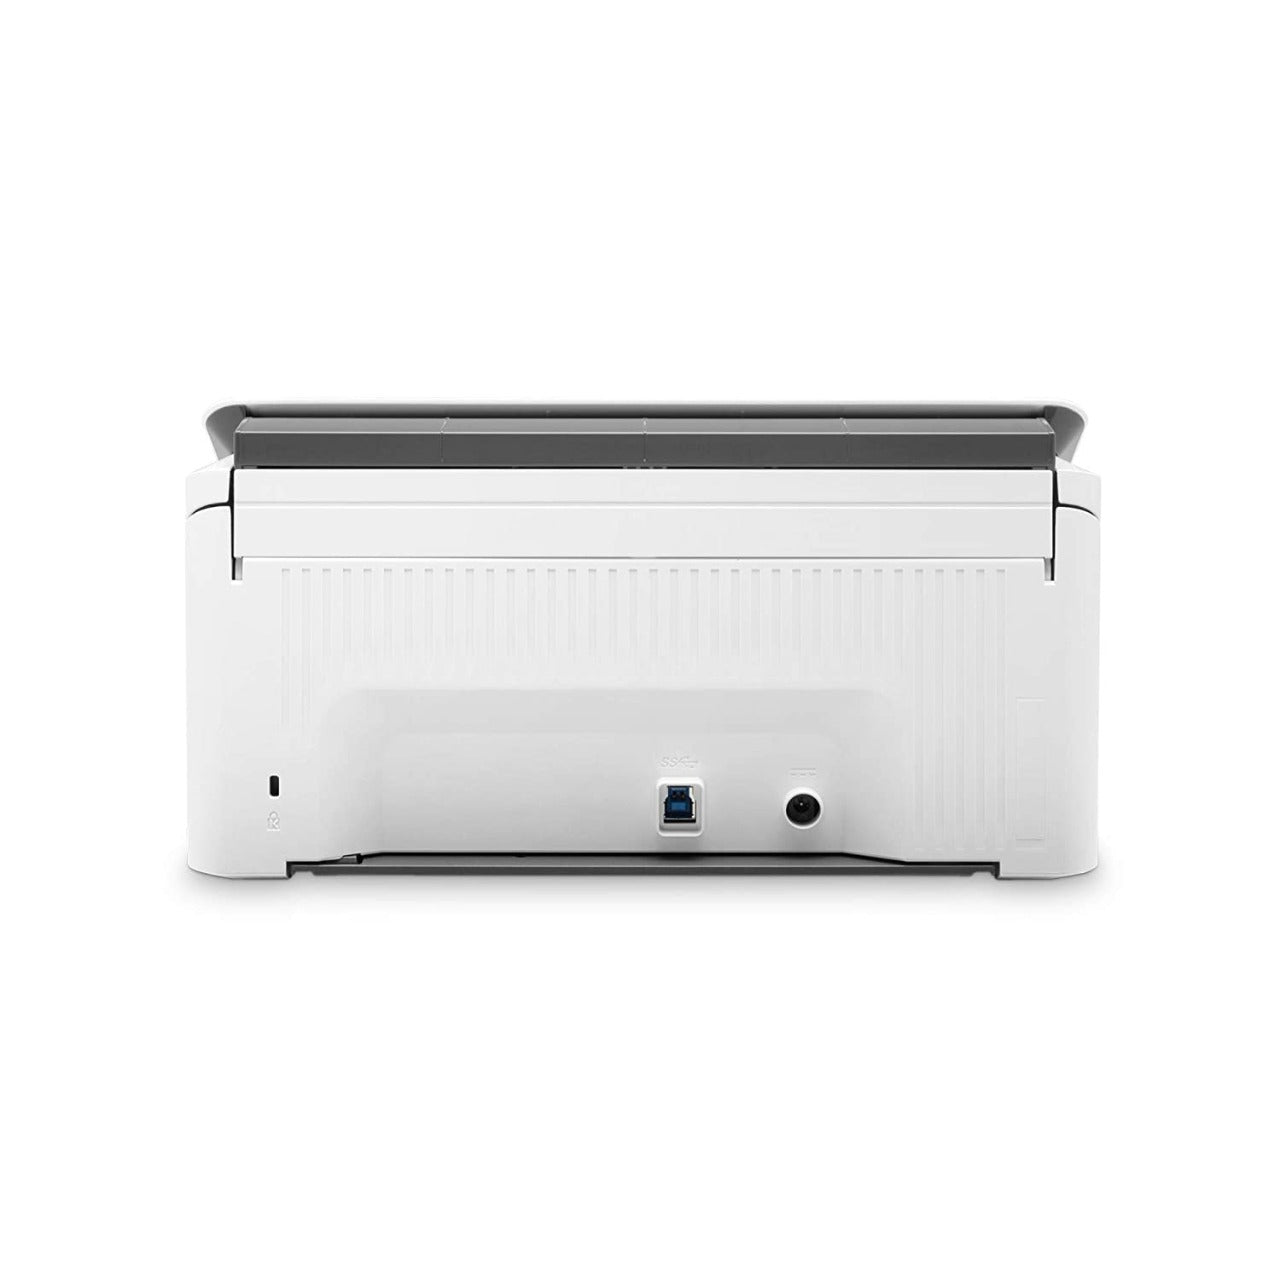 प्रयुक्त HP स्कैनजेट प्रो 2000 s2 शीट-फीड स्कैनर